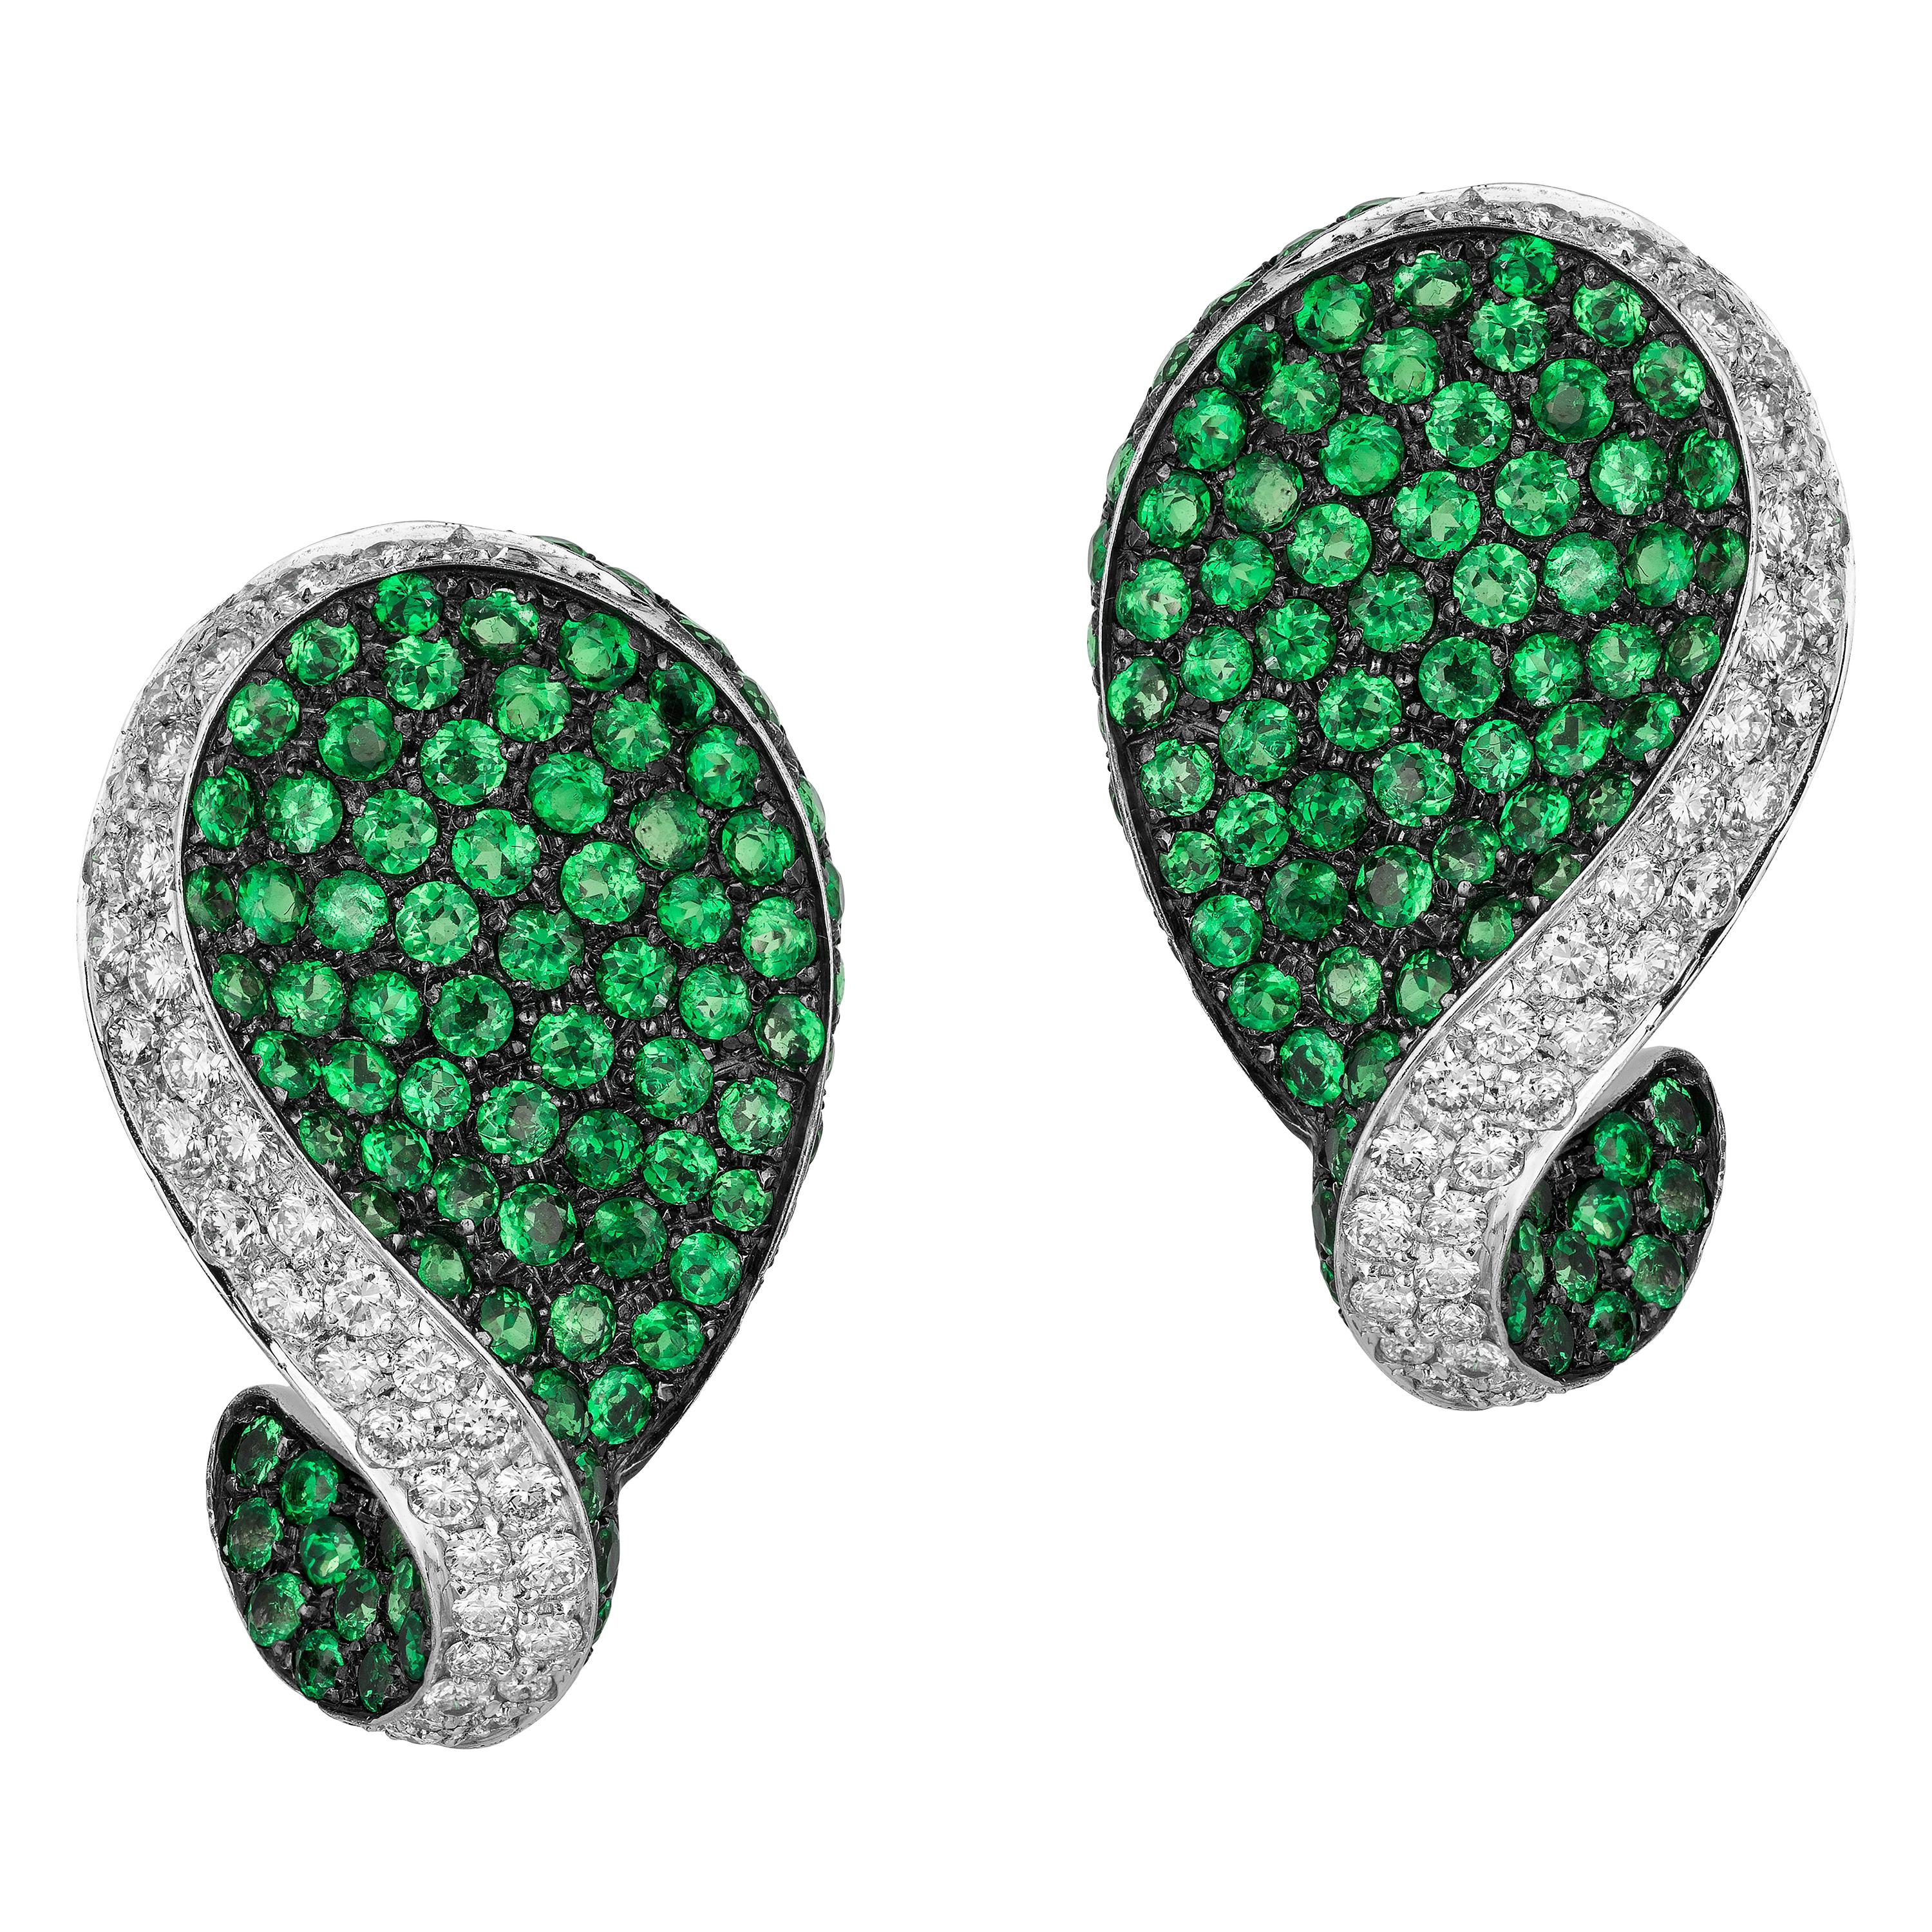 Andreoli Green Tsavorite Garnet Diamond Clip-On Earrings 18 Karat White Gold